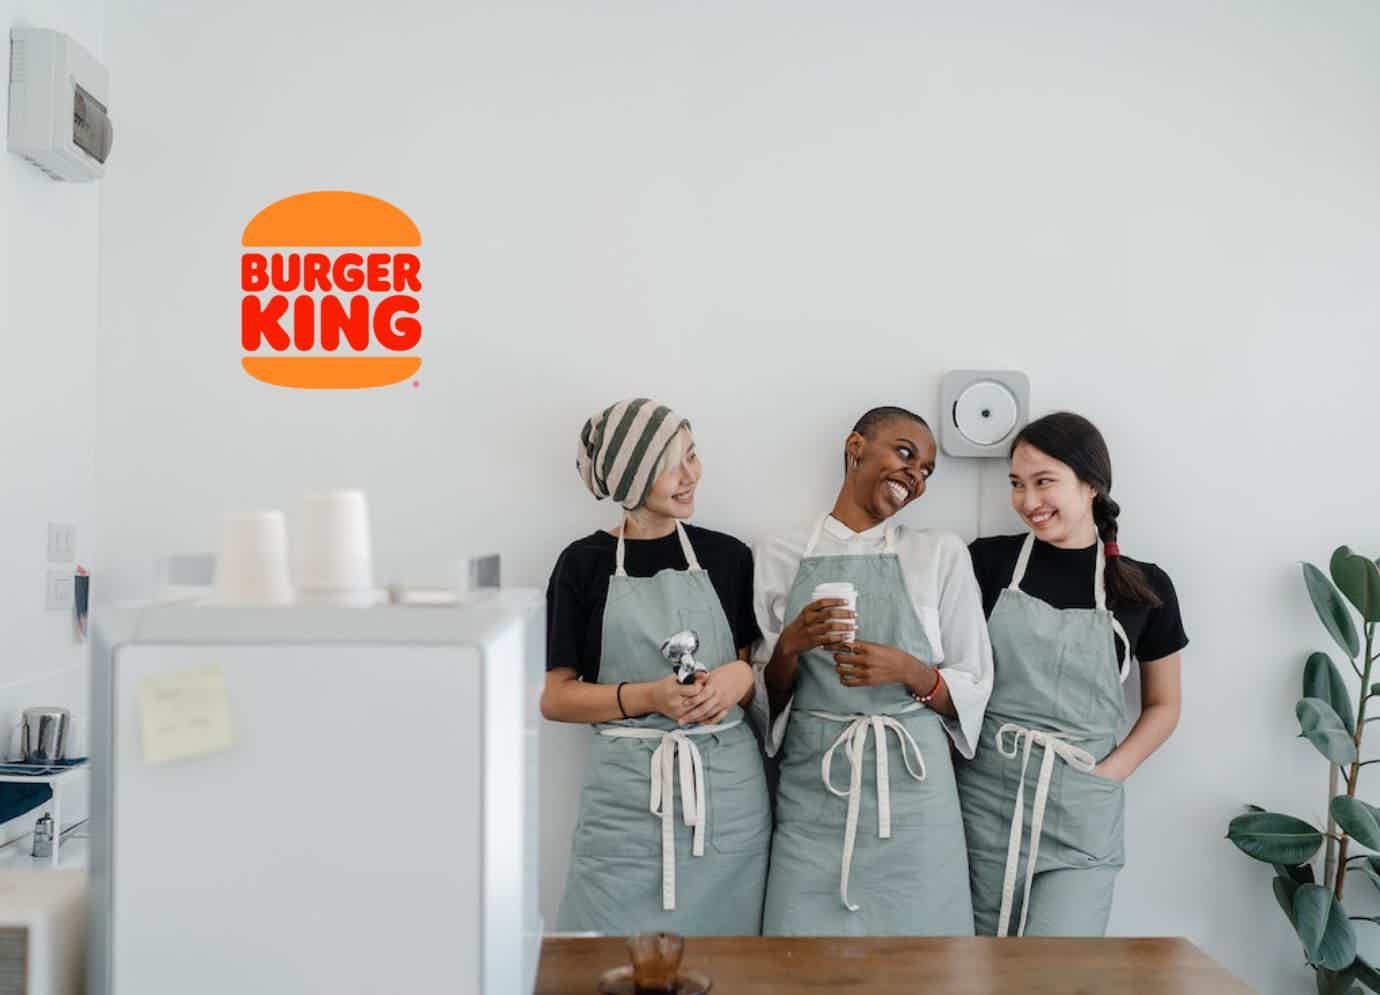 O Burger King também está com ótimas oportunidades abertas! Fonte: Burger King / Freepik.